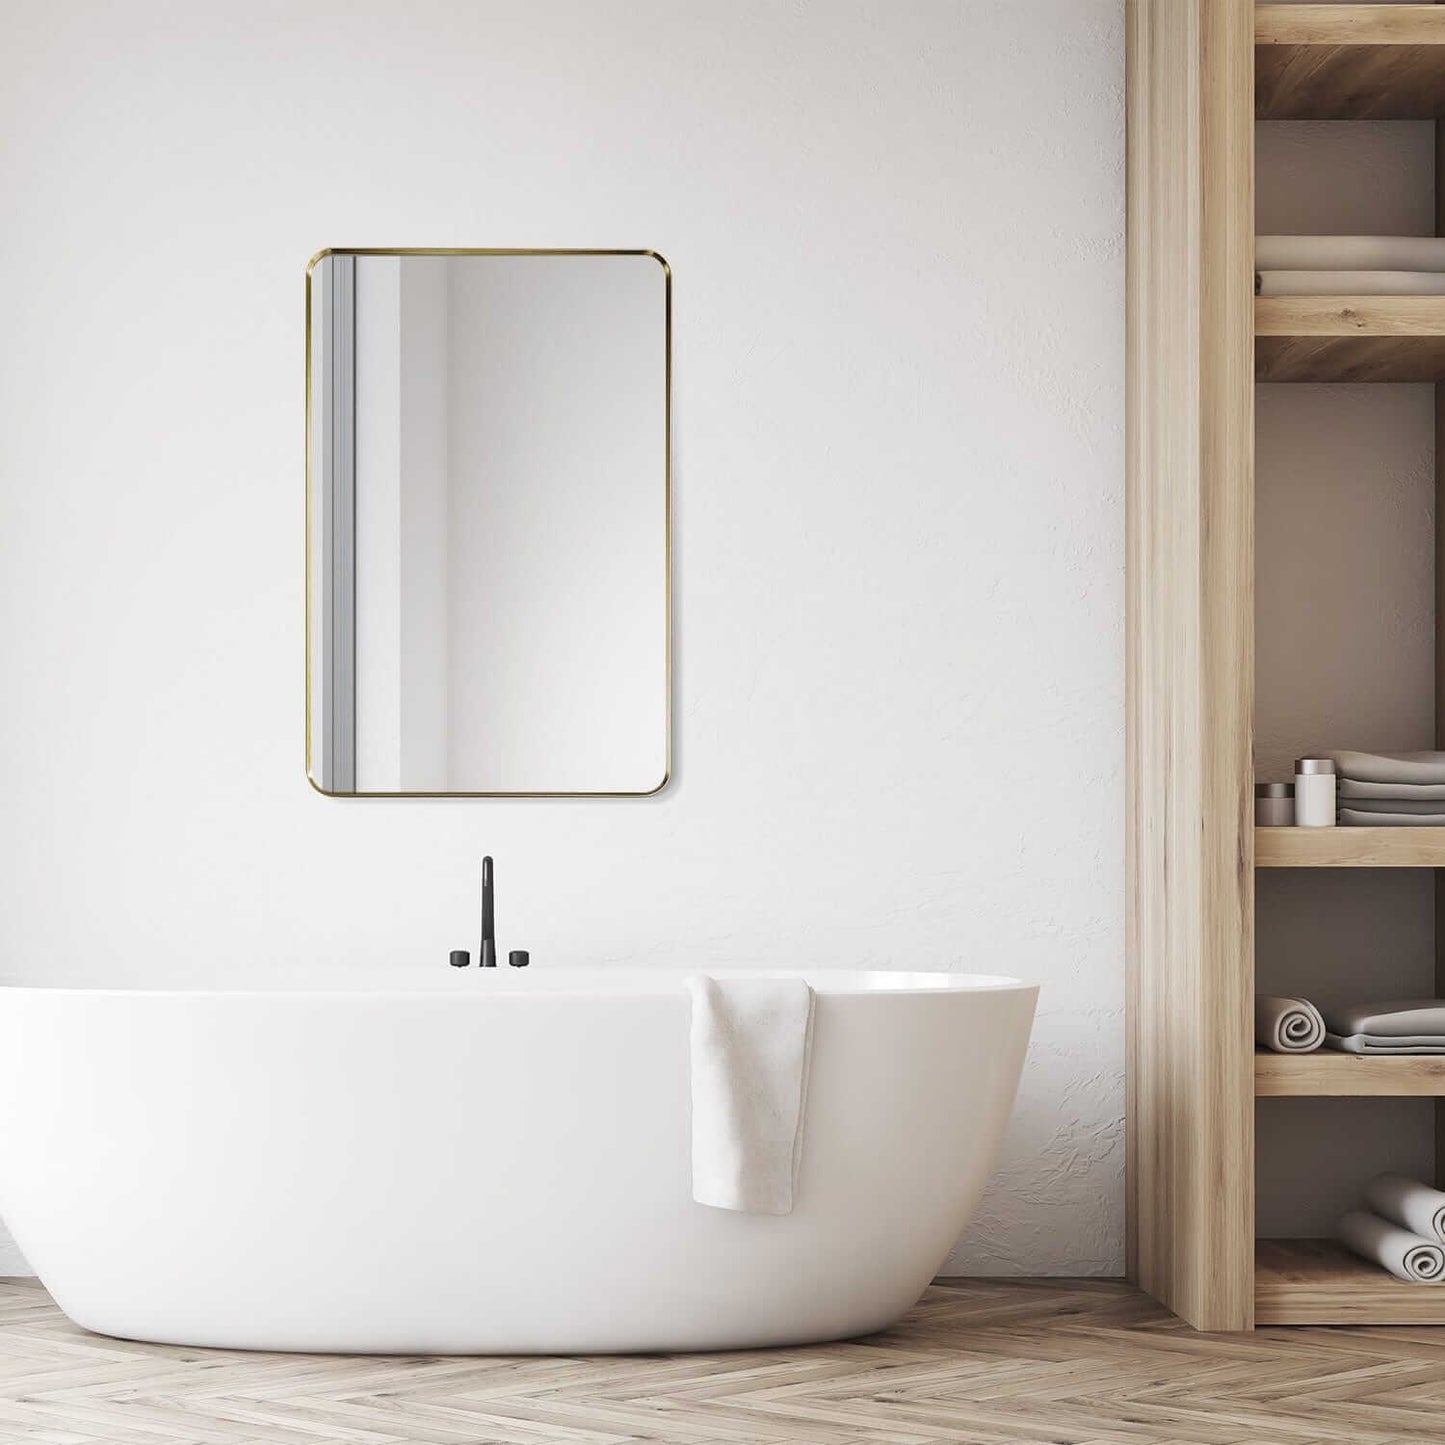 Bathroom Mirror - Altair Nettuno 24 x 36 - 754024-MIR-GF